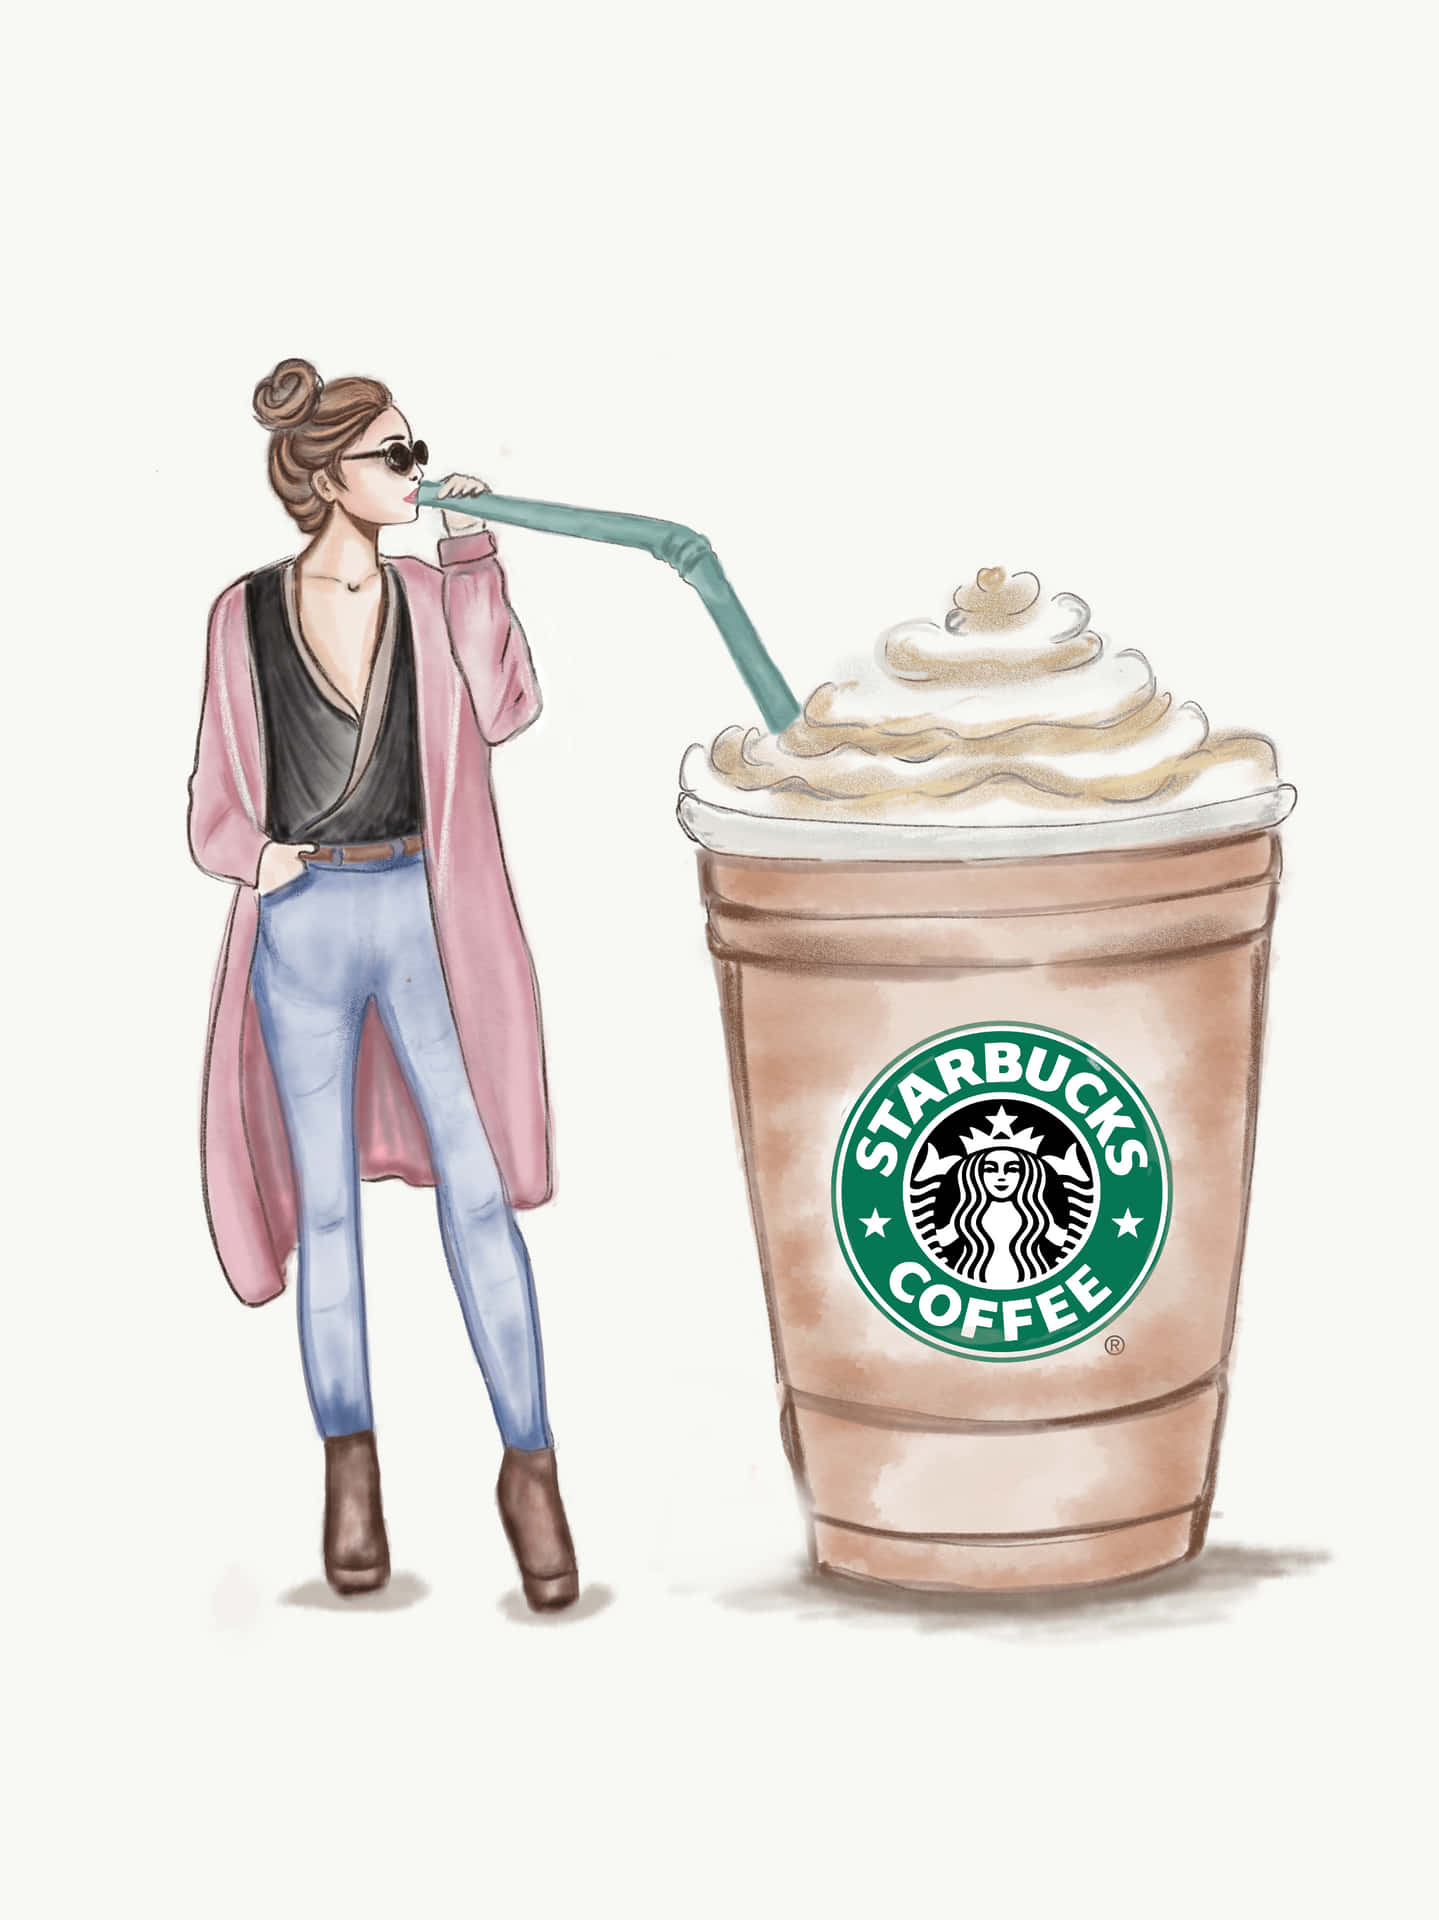 Nehmensie Sich Einen Moment Zeit, Um Die Ästhetik Von Starbucks Zu Genießen. Wallpaper